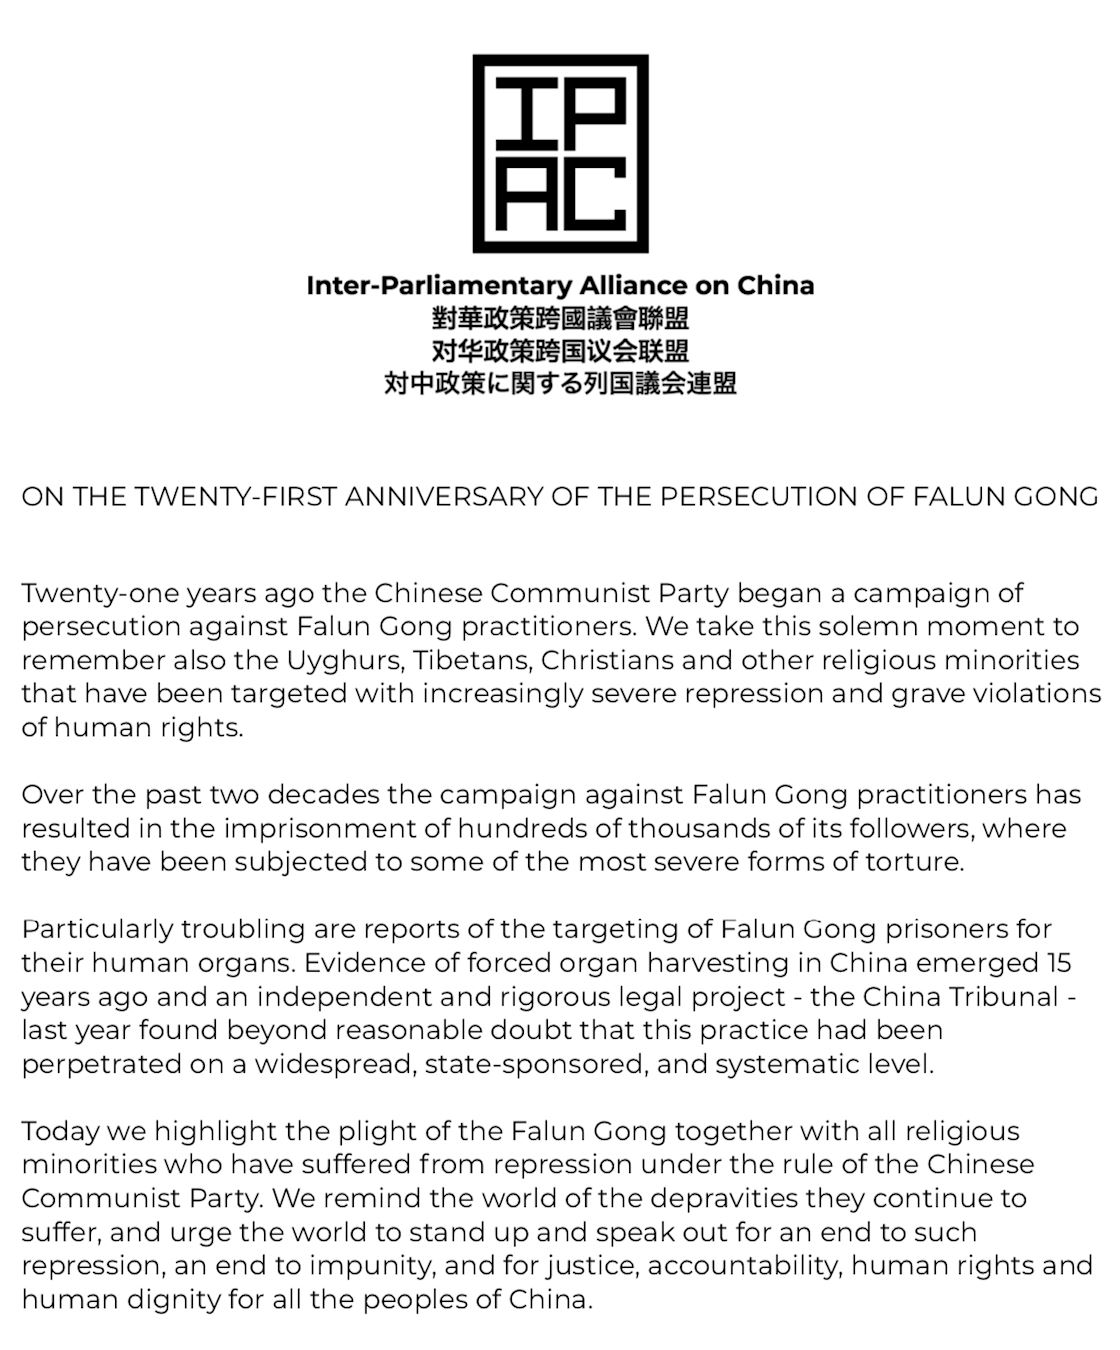 Image for article L'Alliance interparlementaire sur la Chine publie une déclaration condamnant les 21 ans de persécution du Falun Gong